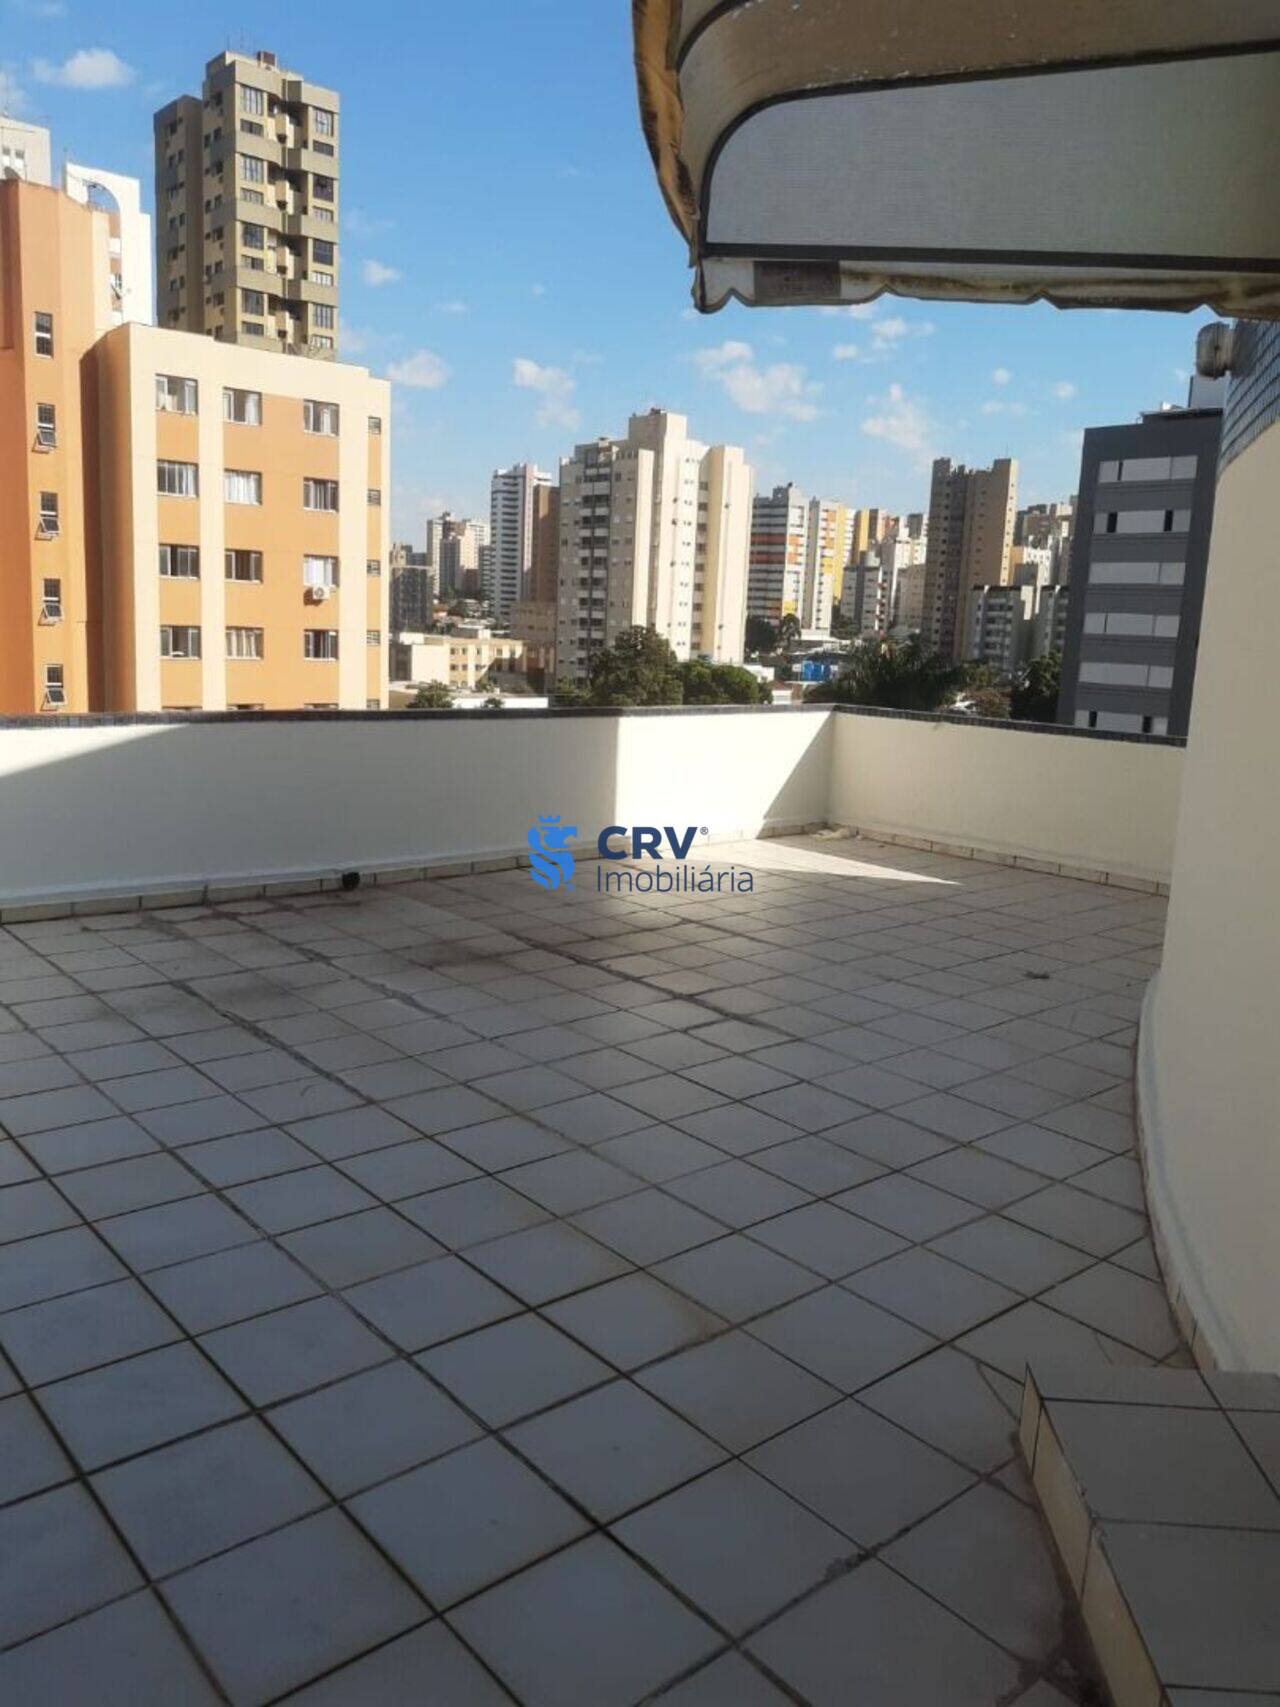 Sala Vila Ipiranga, Londrina - PR